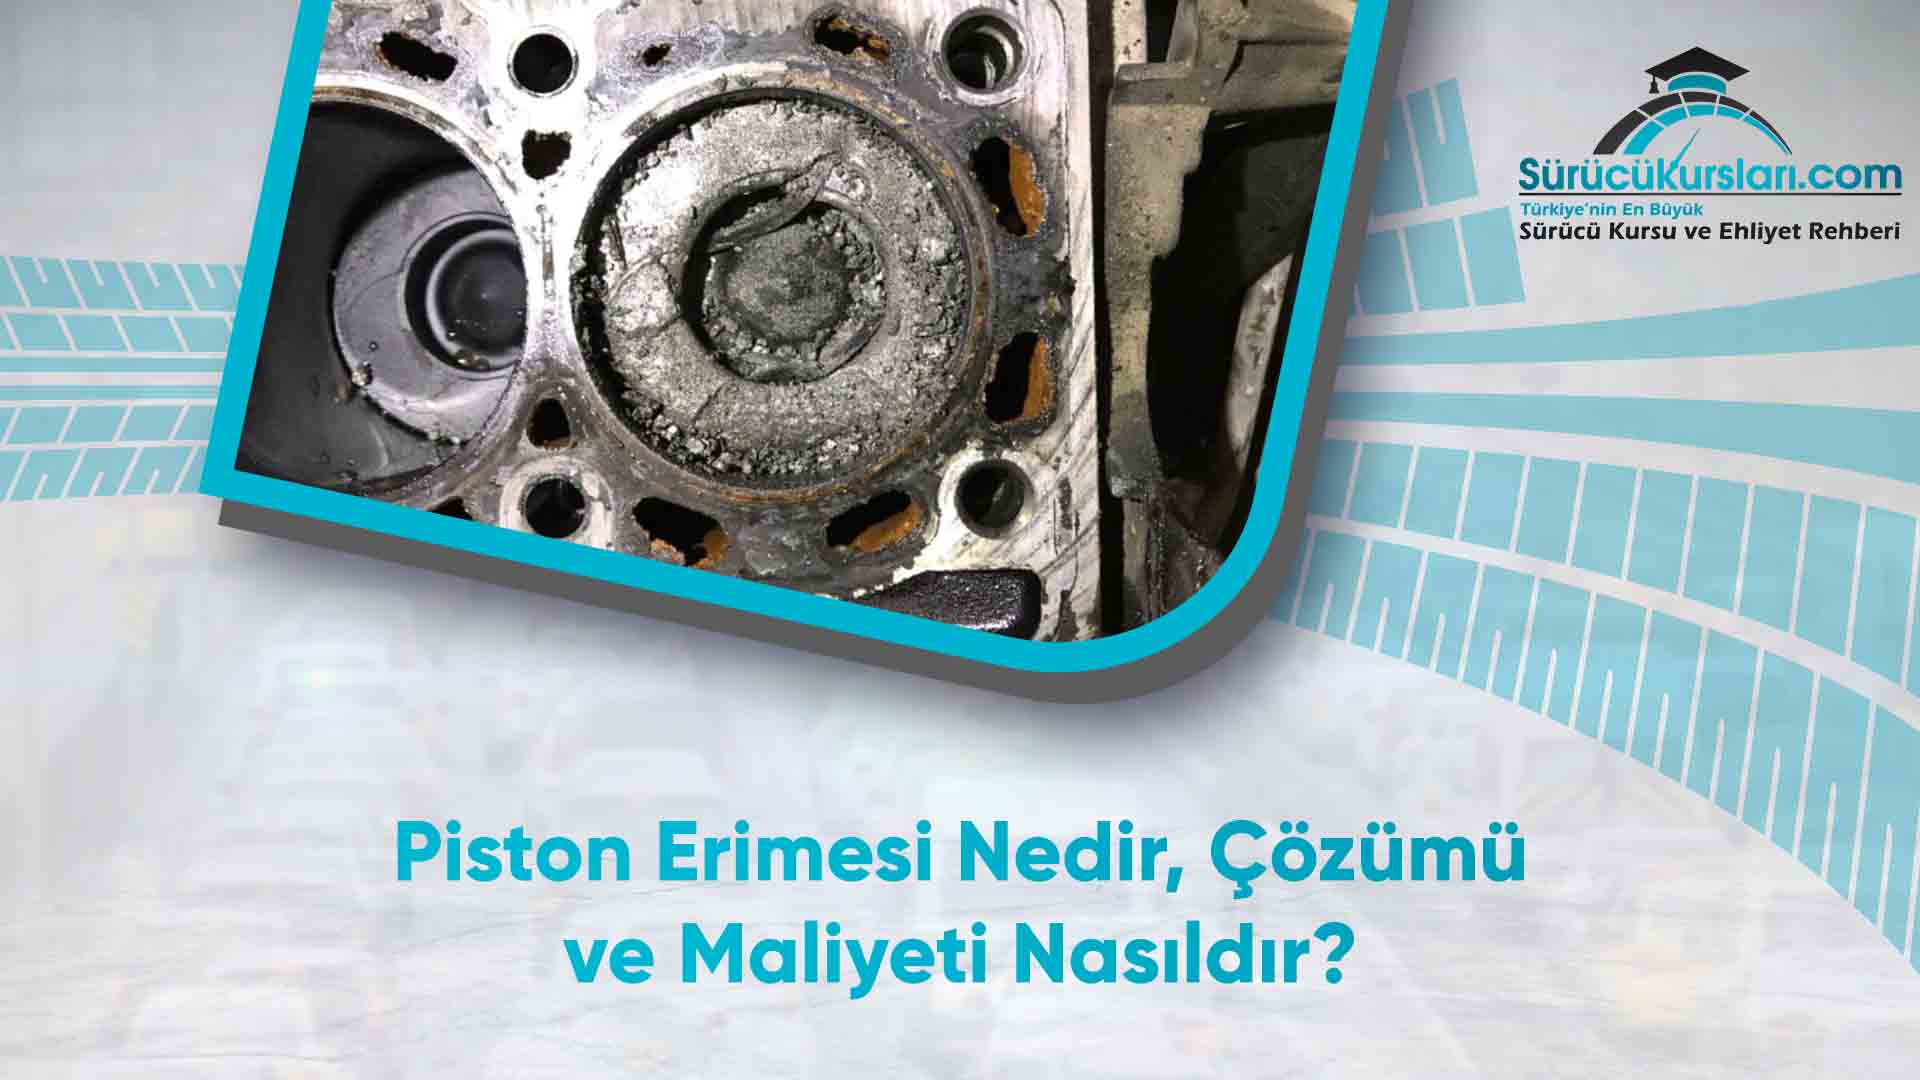 Piston Erimesi Nedir - Çözümü ve Maliyeti Nasıldır